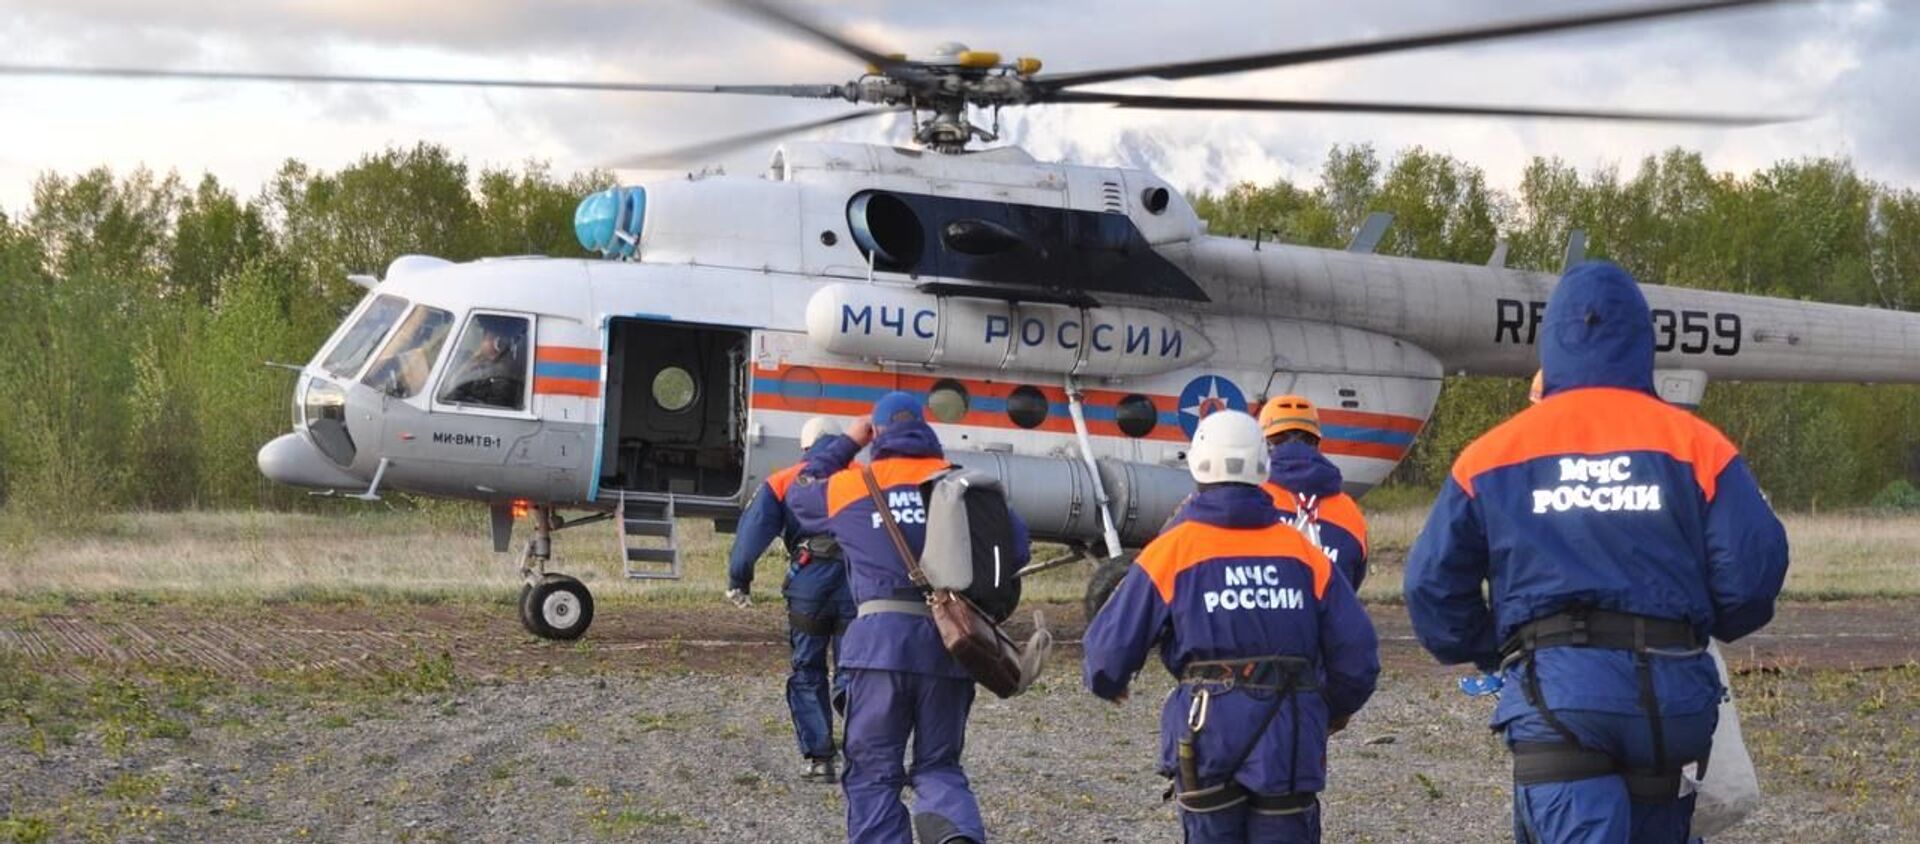 Các nhân viên thuộc cơ quan cứu hộ thuộc Bộ Tình trạng Khẩn cấp của Liên bang Nga đang tới hiện trường máy bay trực thăng Mi-8 gặp nạn ở Kamchatka - Sputnik Việt Nam, 1920, 12.08.2021